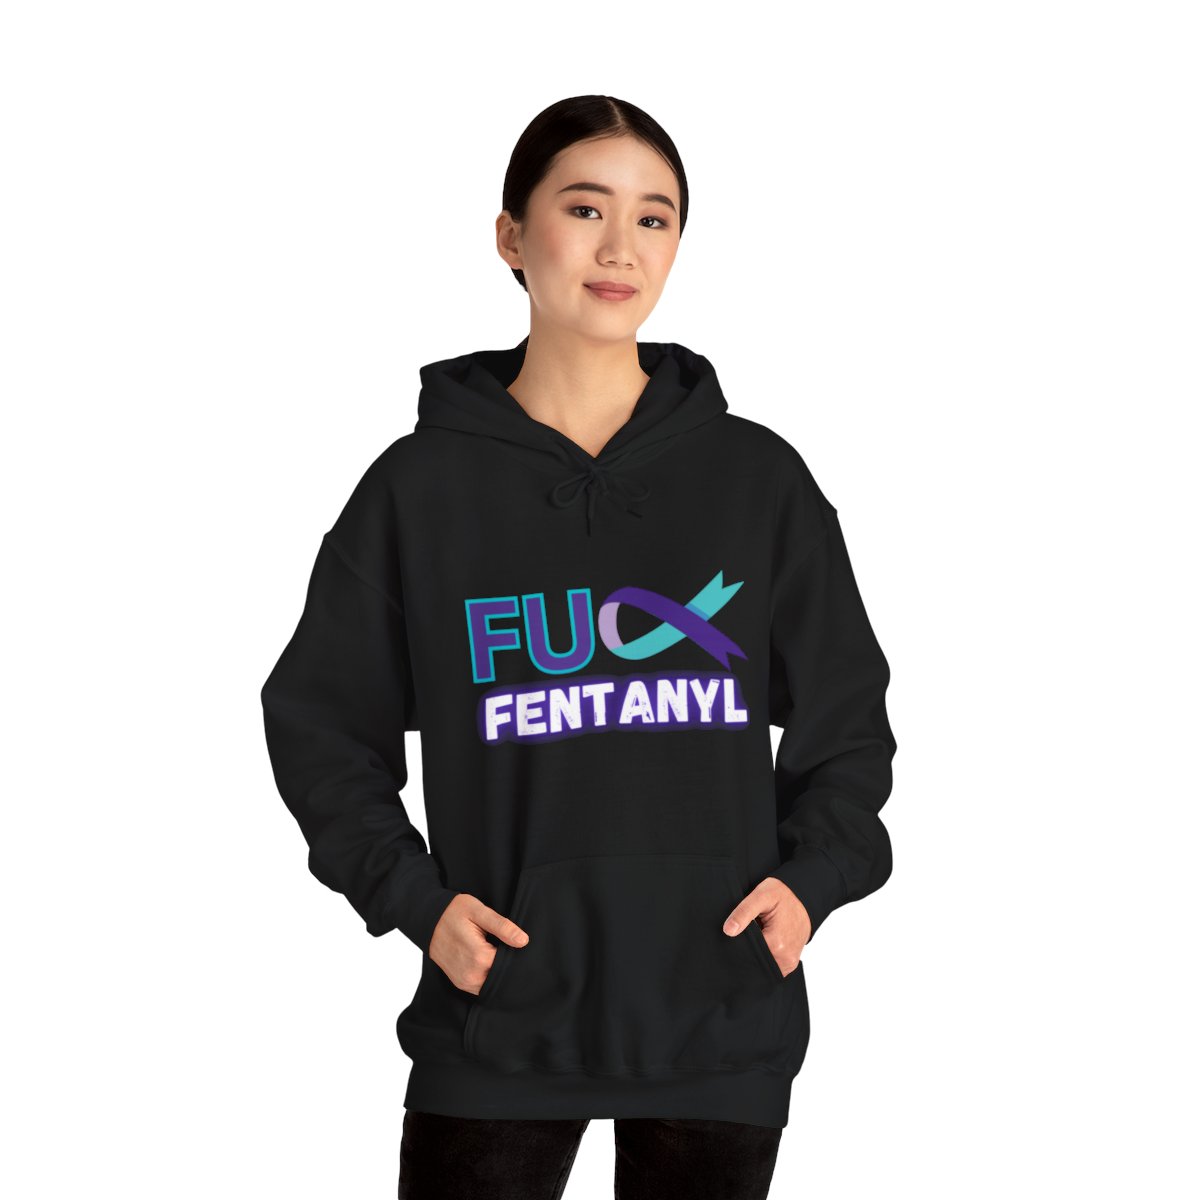 #fuckfentanyl - Unisex Hooded Sweatshirt product thumbnail image